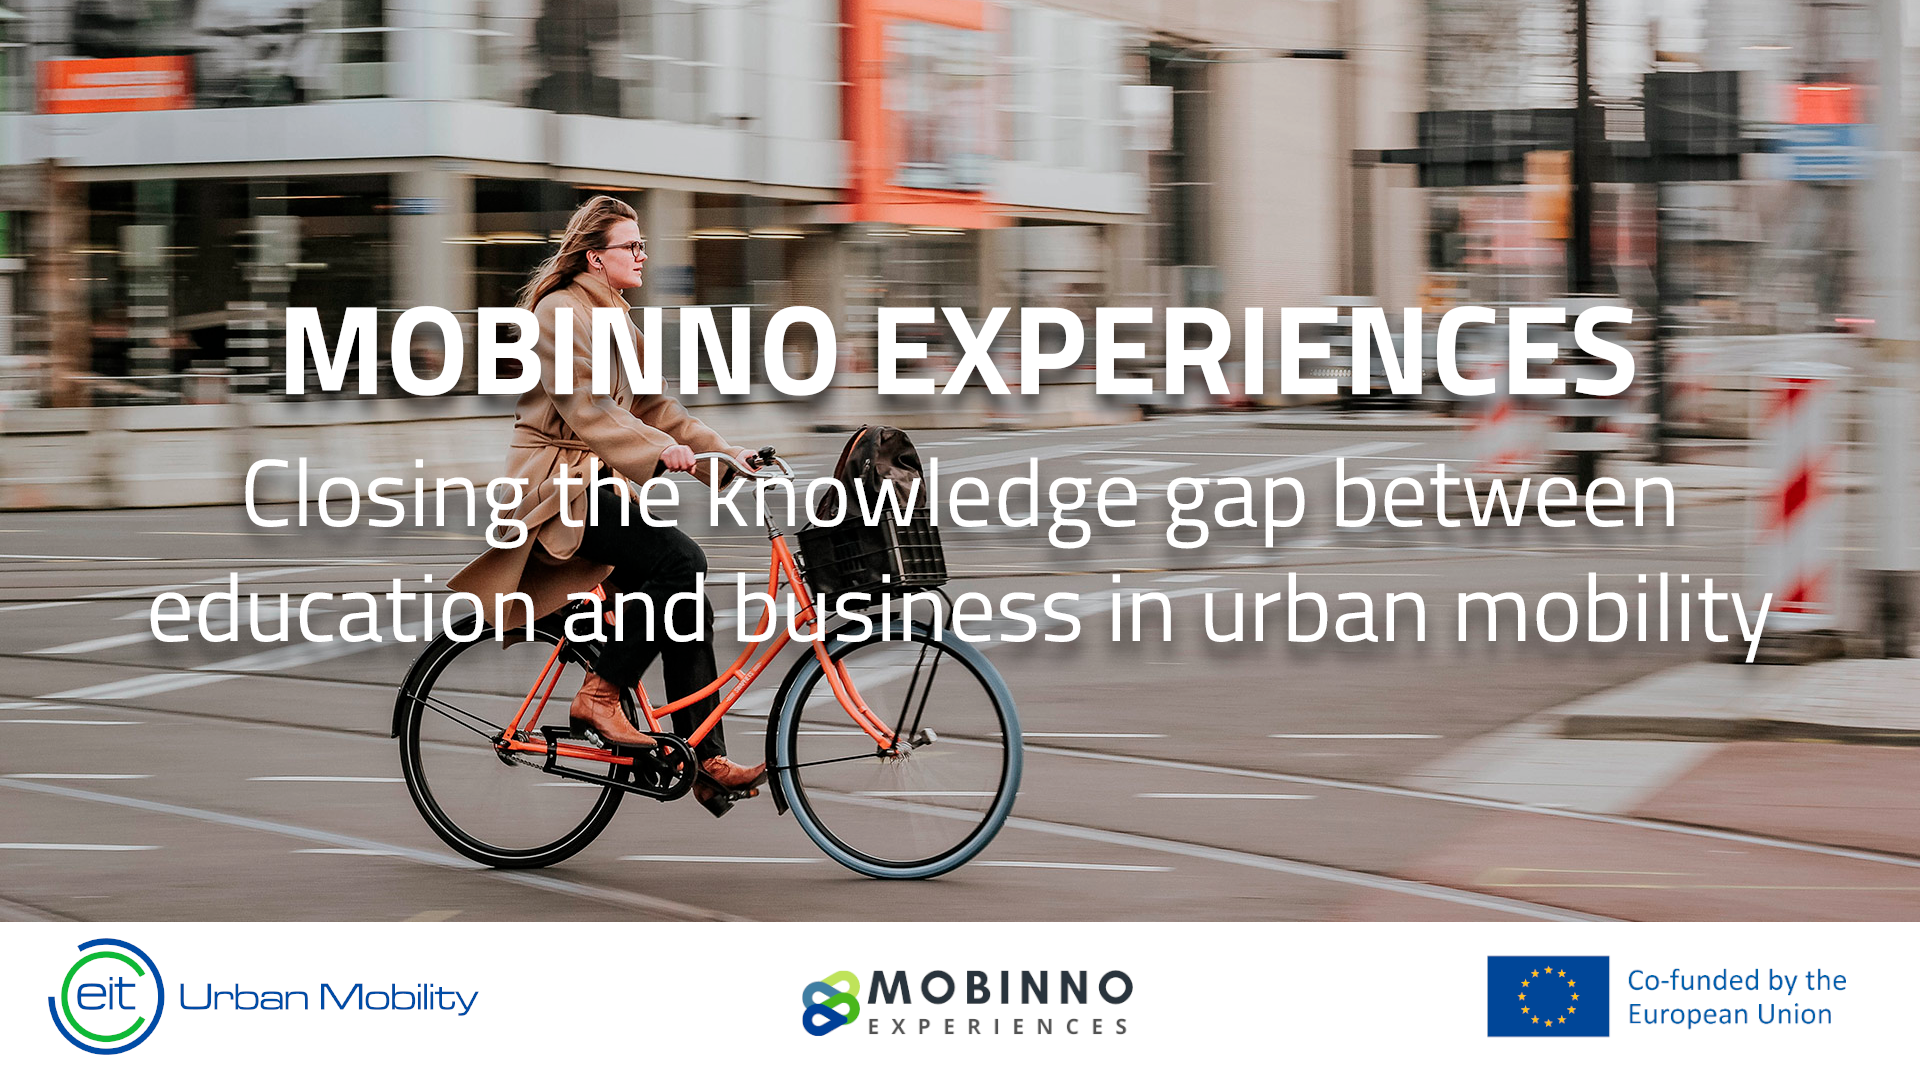 Certifícate en movilidad urbana innovadora con la iniciativa europea Mobinno Experiences